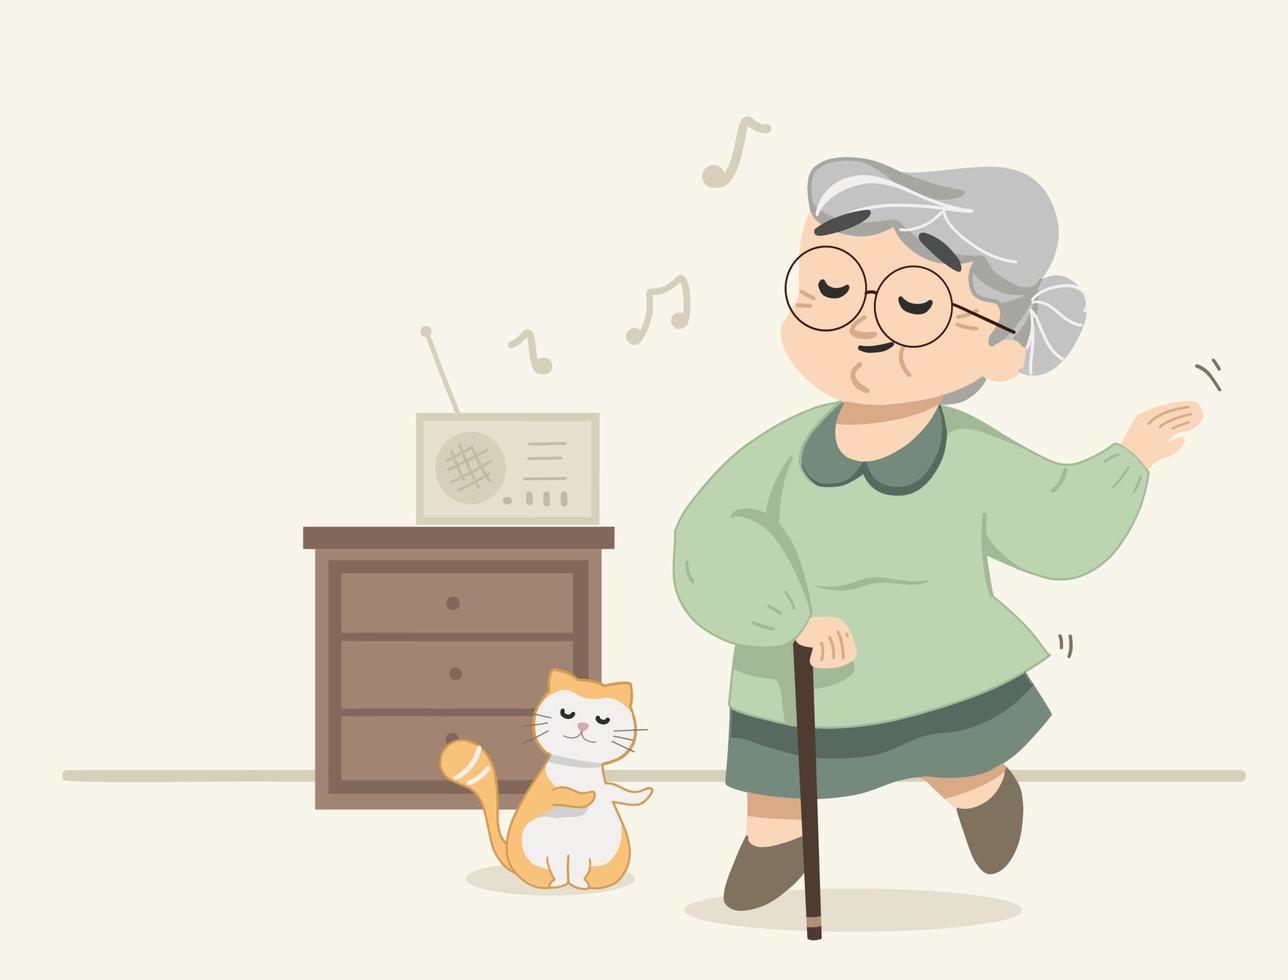 nonnina carina che balla sulla canzone alla radio. piccolo gatto che si unisce alla nonna mentre balla. illustrazione vettoriale piatto moderno carino.